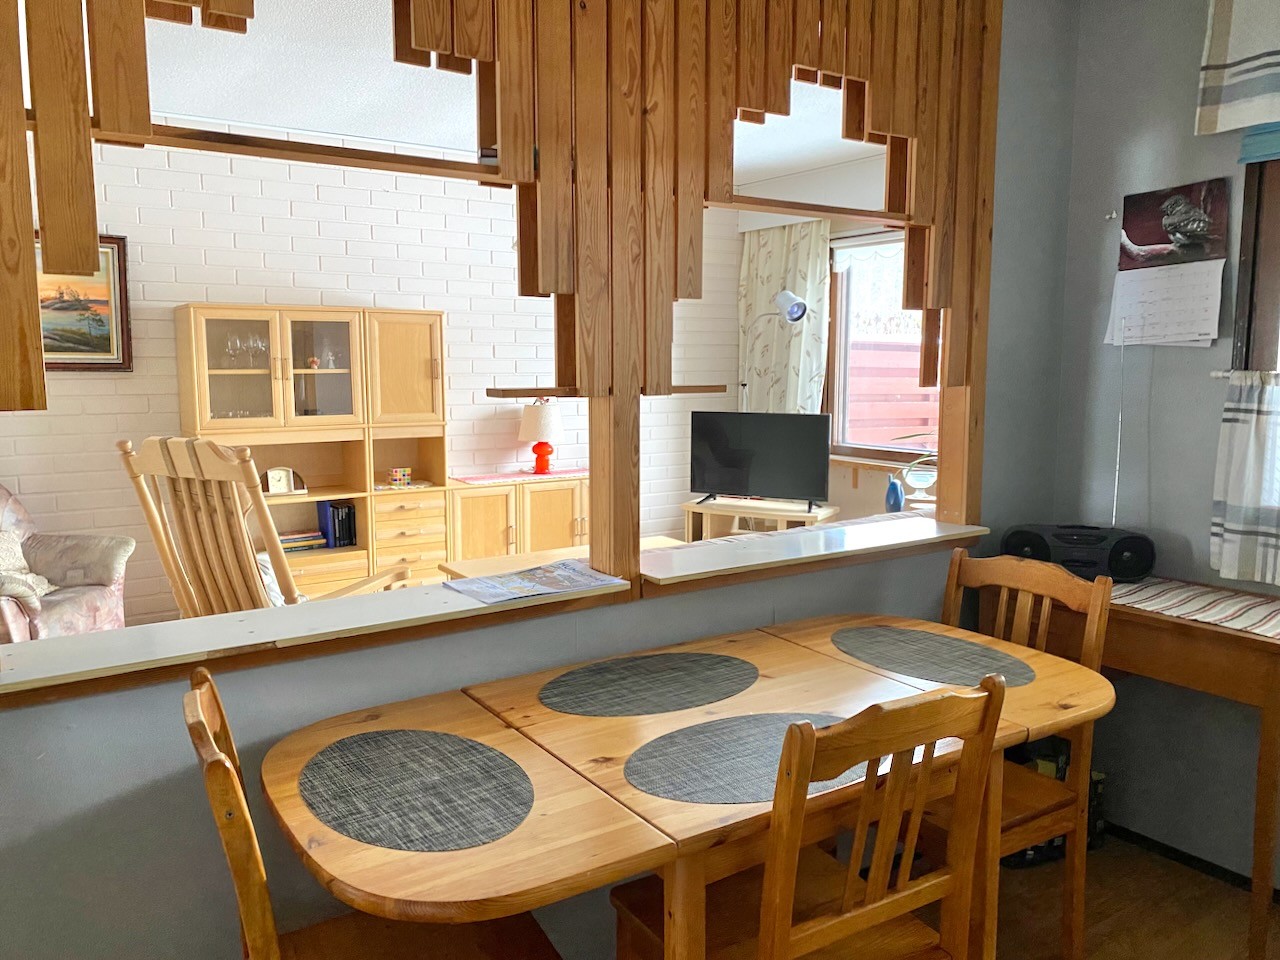 Keittiön ja olohuoneen erottaa seinäke, jossa on  aukko. Aukkoon on tehty puurimoilla aikonaan melko pätevät somisteet.